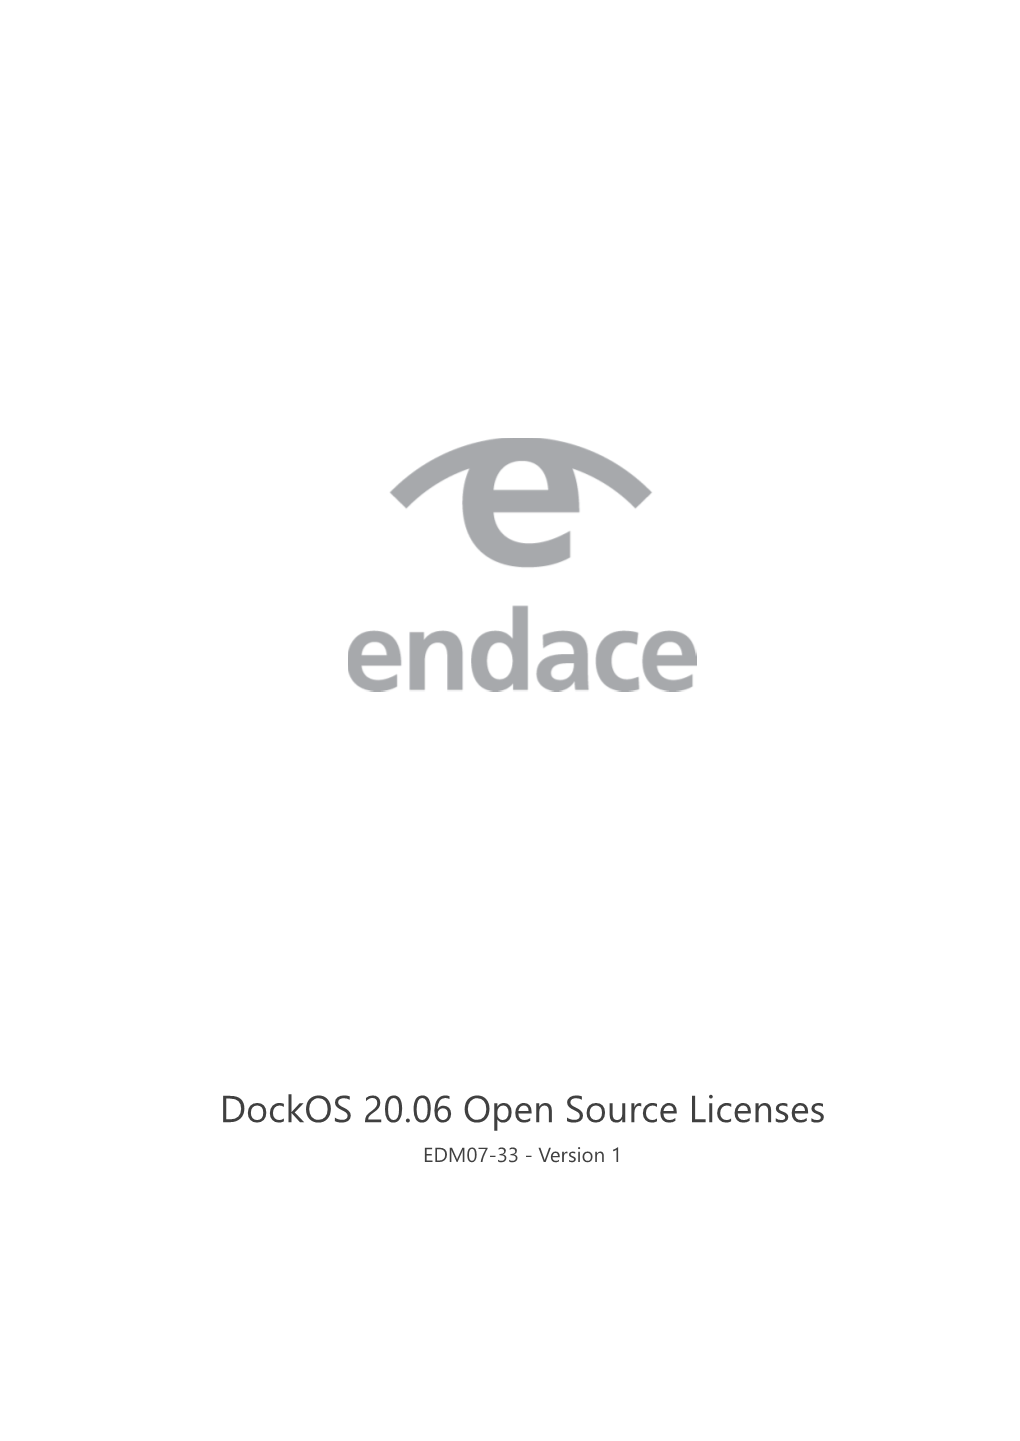 EDM07-33V1 Dockos Open Source Licenses